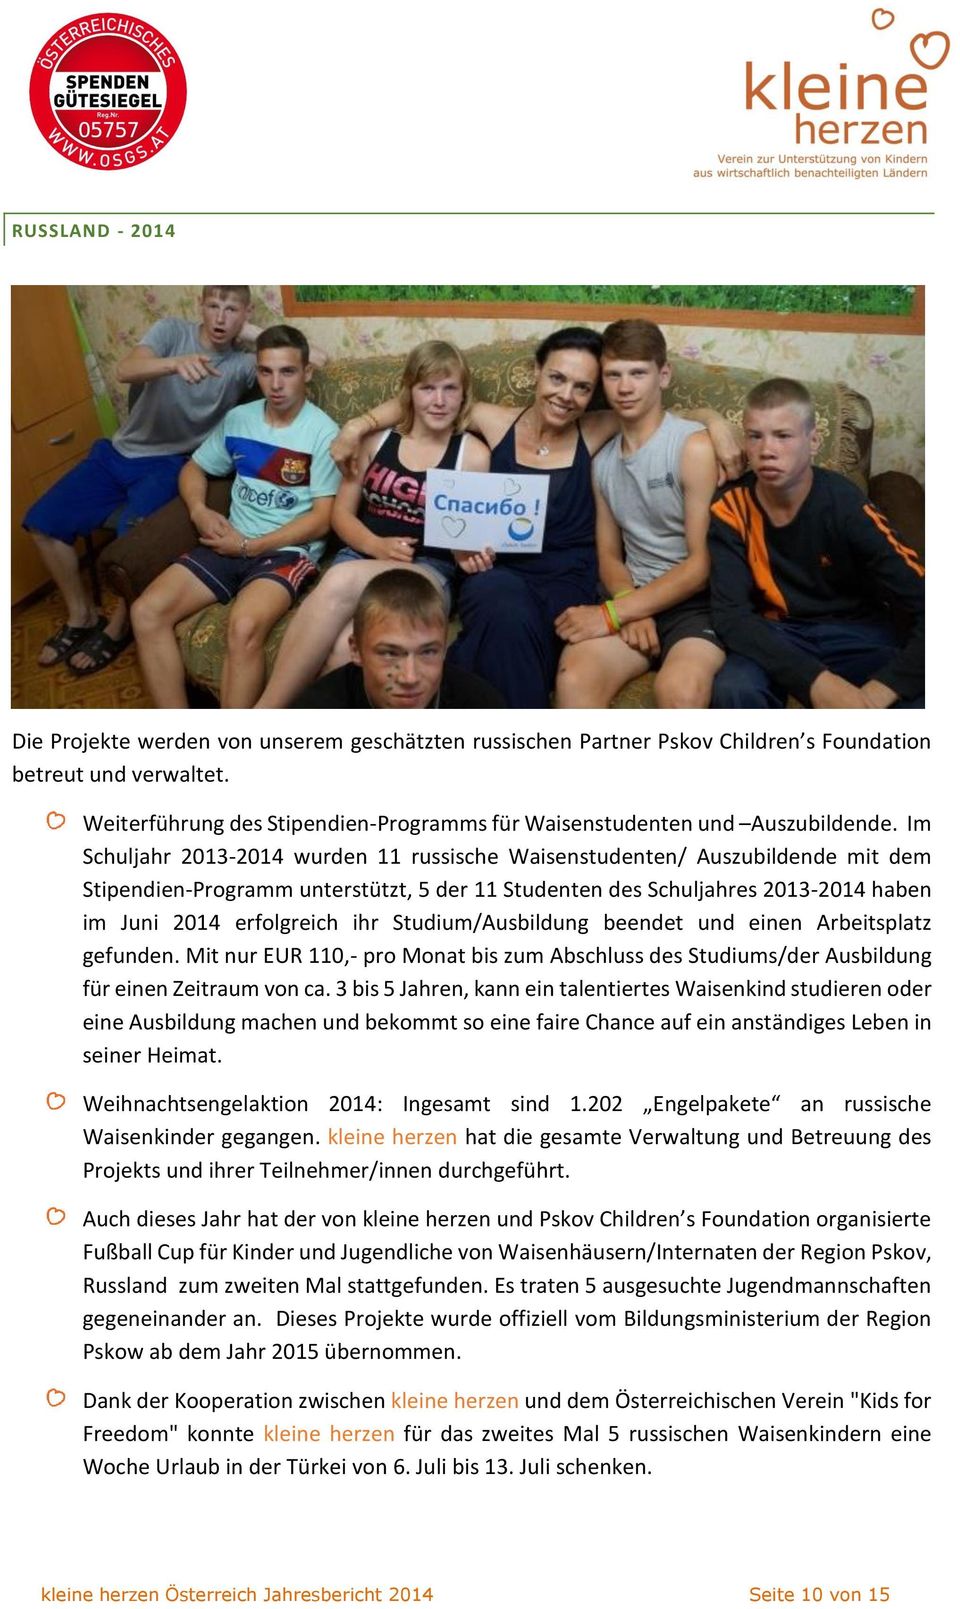 Im Schuljahr 2013-2014 wurden 11 russische Waisenstudenten/ Auszubildende mit dem Stipendien-Programm unterstützt, 5 der 11 Studenten des Schuljahres 2013-2014 haben im Juni 2014 erfolgreich ihr